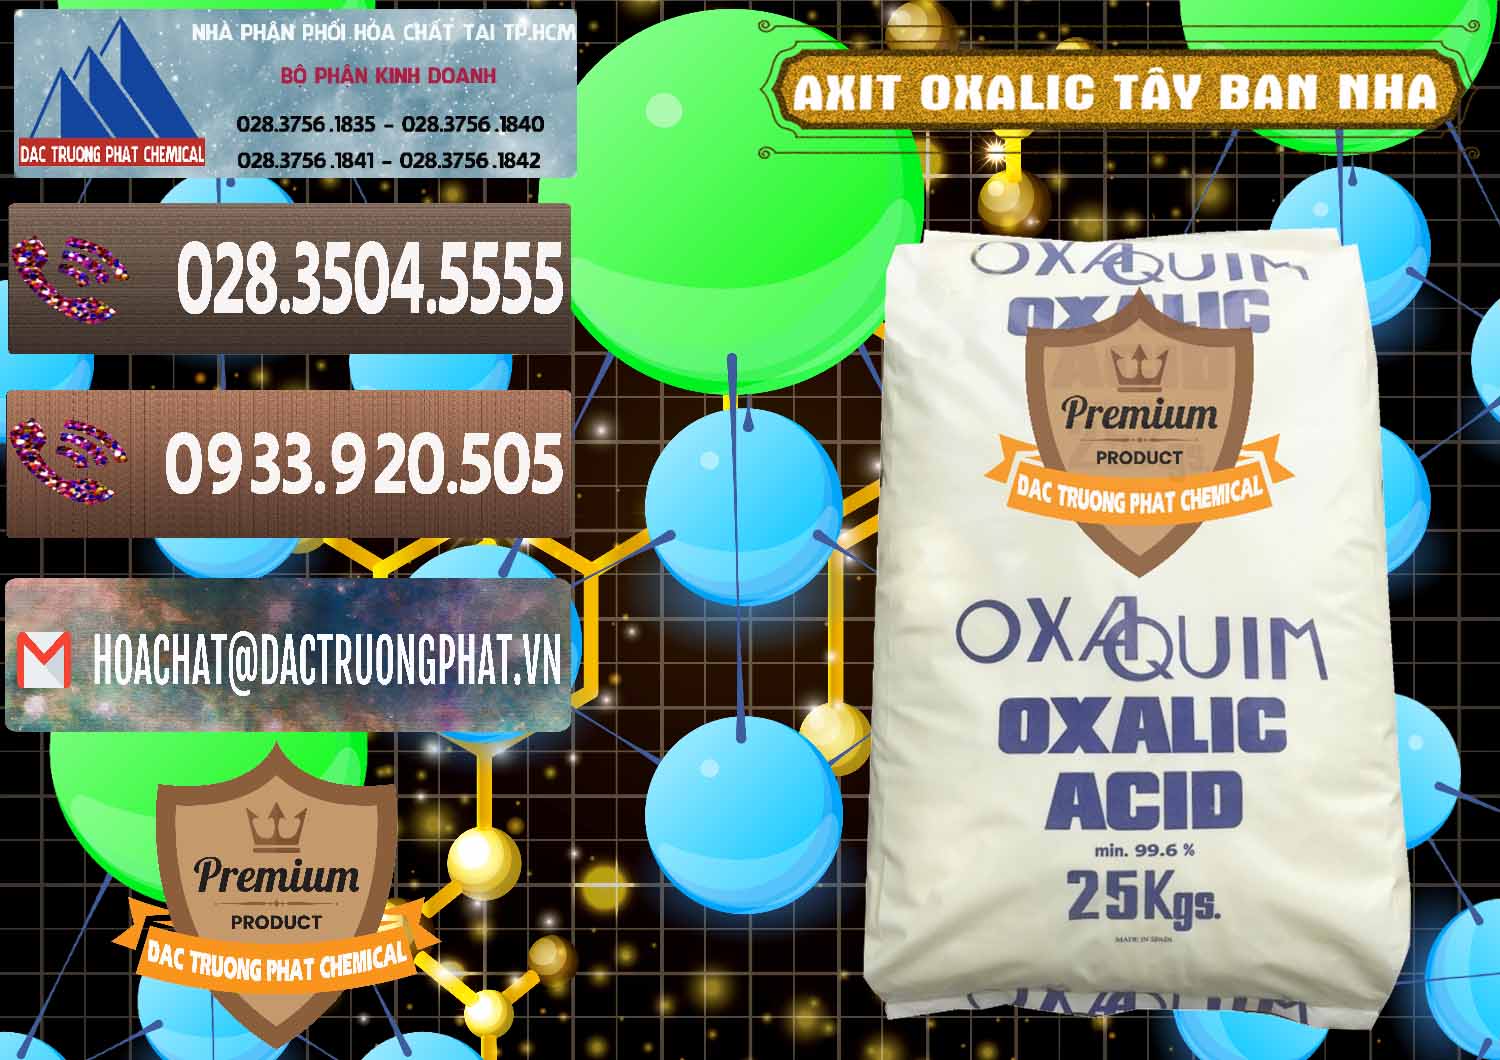 Bán & cung ứng Acid Oxalic – Axit Oxalic 99.6% Tây Ban Nha Spain - 0269 - Cty phân phối & cung cấp hóa chất tại TP.HCM - hoachatviet.net